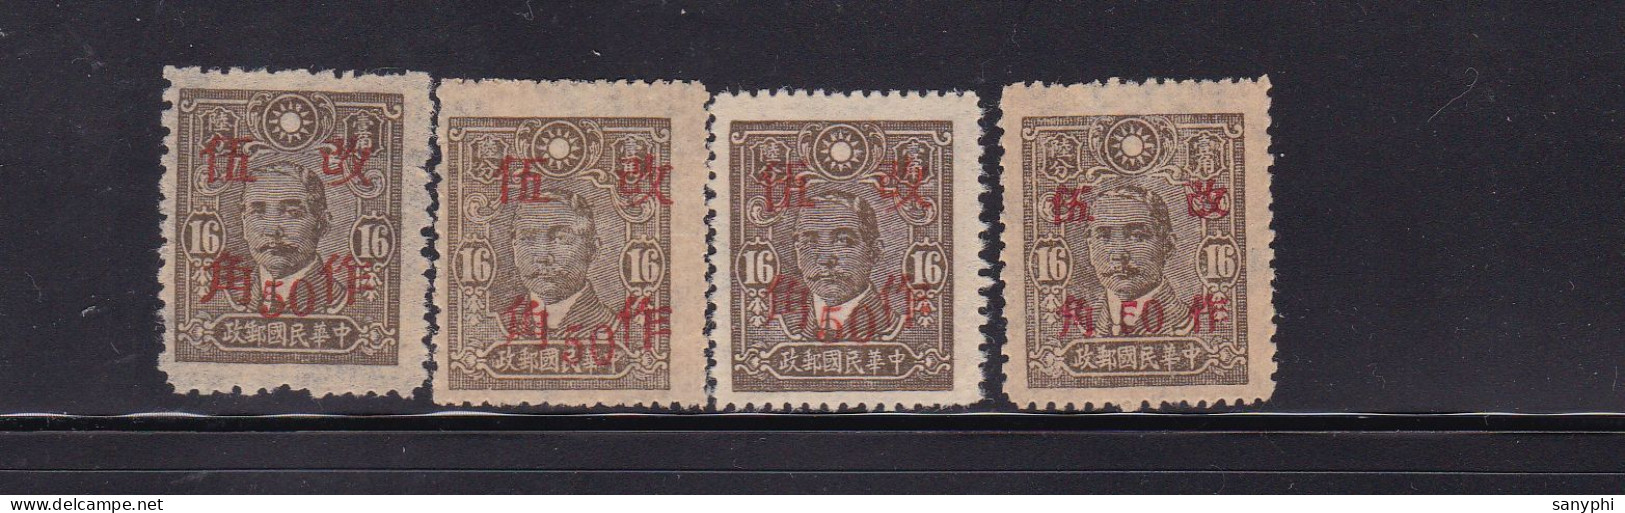 China Republic Dr Sun 16v Ovpt Various Provinces,4 Unused Stamps - 1912-1949 République